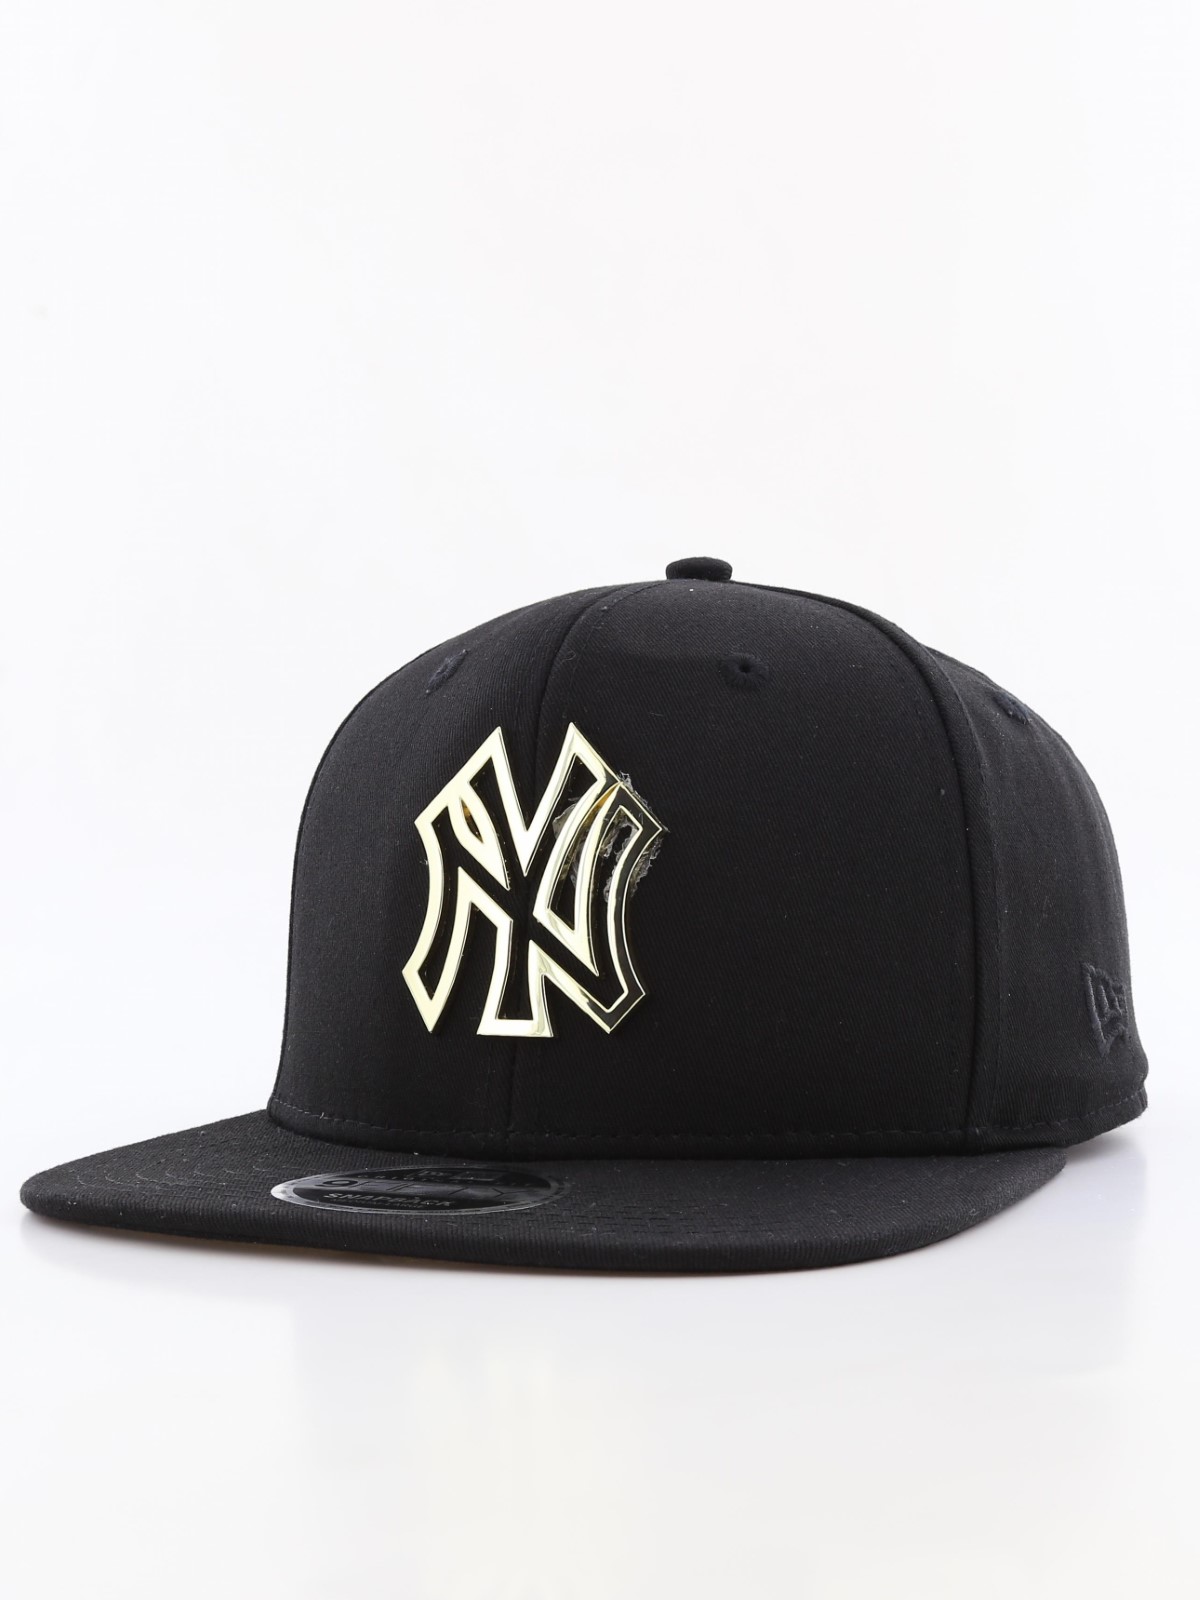 New Era Metal Badge New York Yankees Men's Cap Black M/L